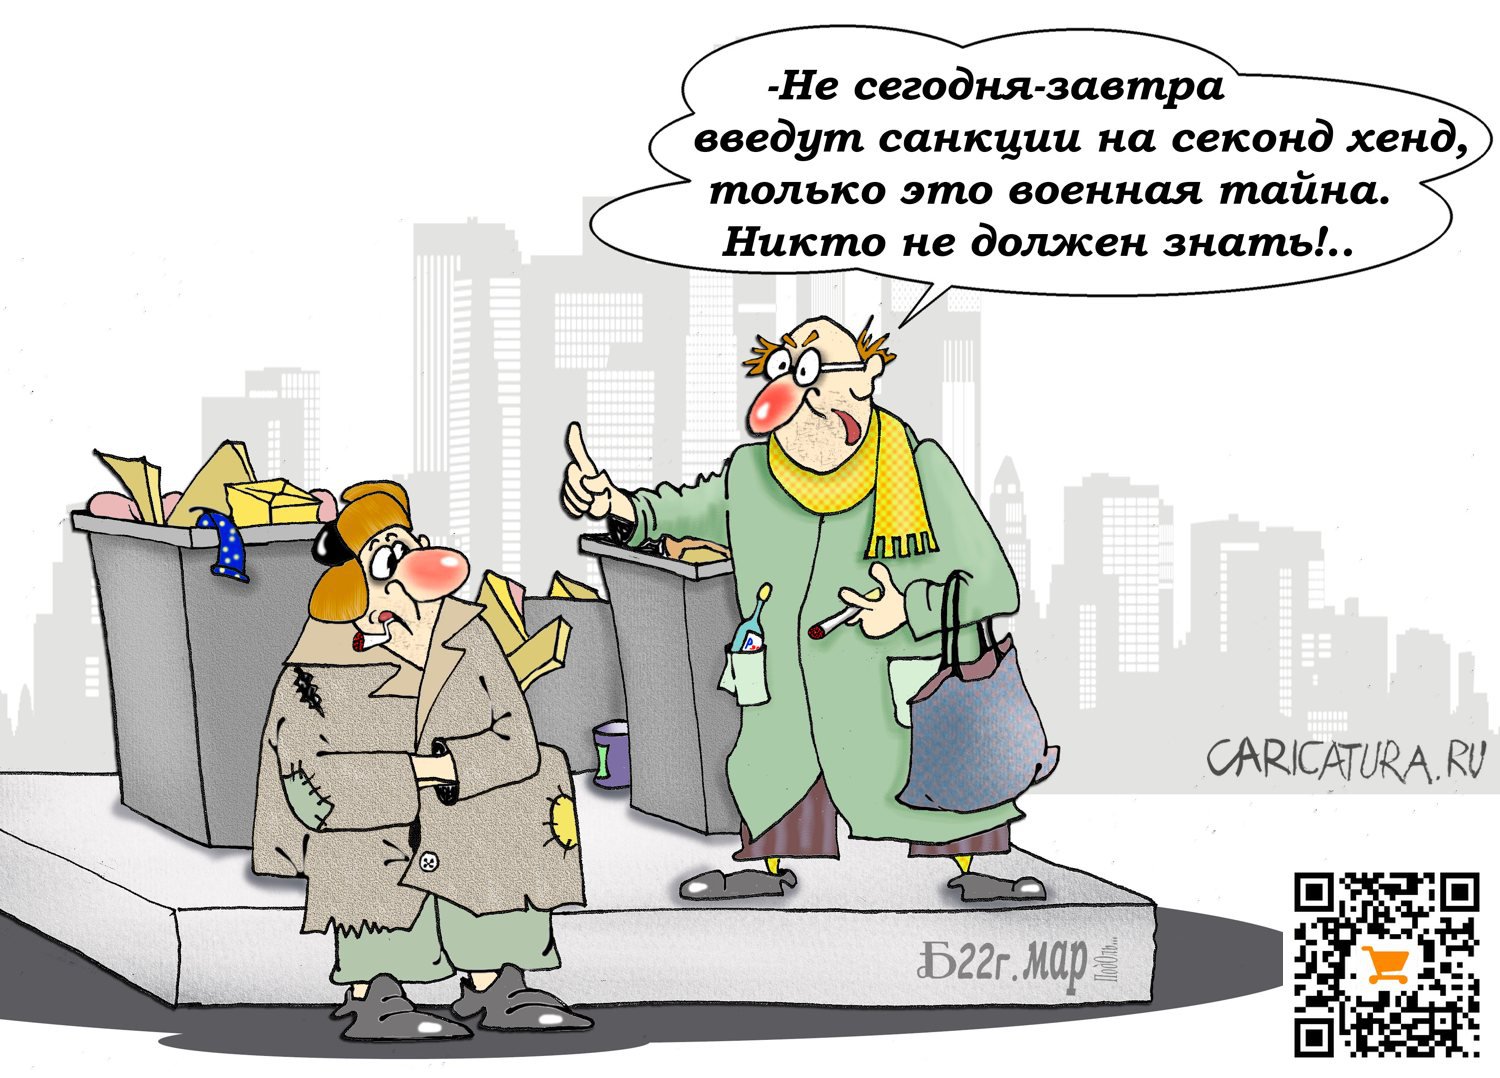 Карикатура "Про военную тайну", Борис Демин